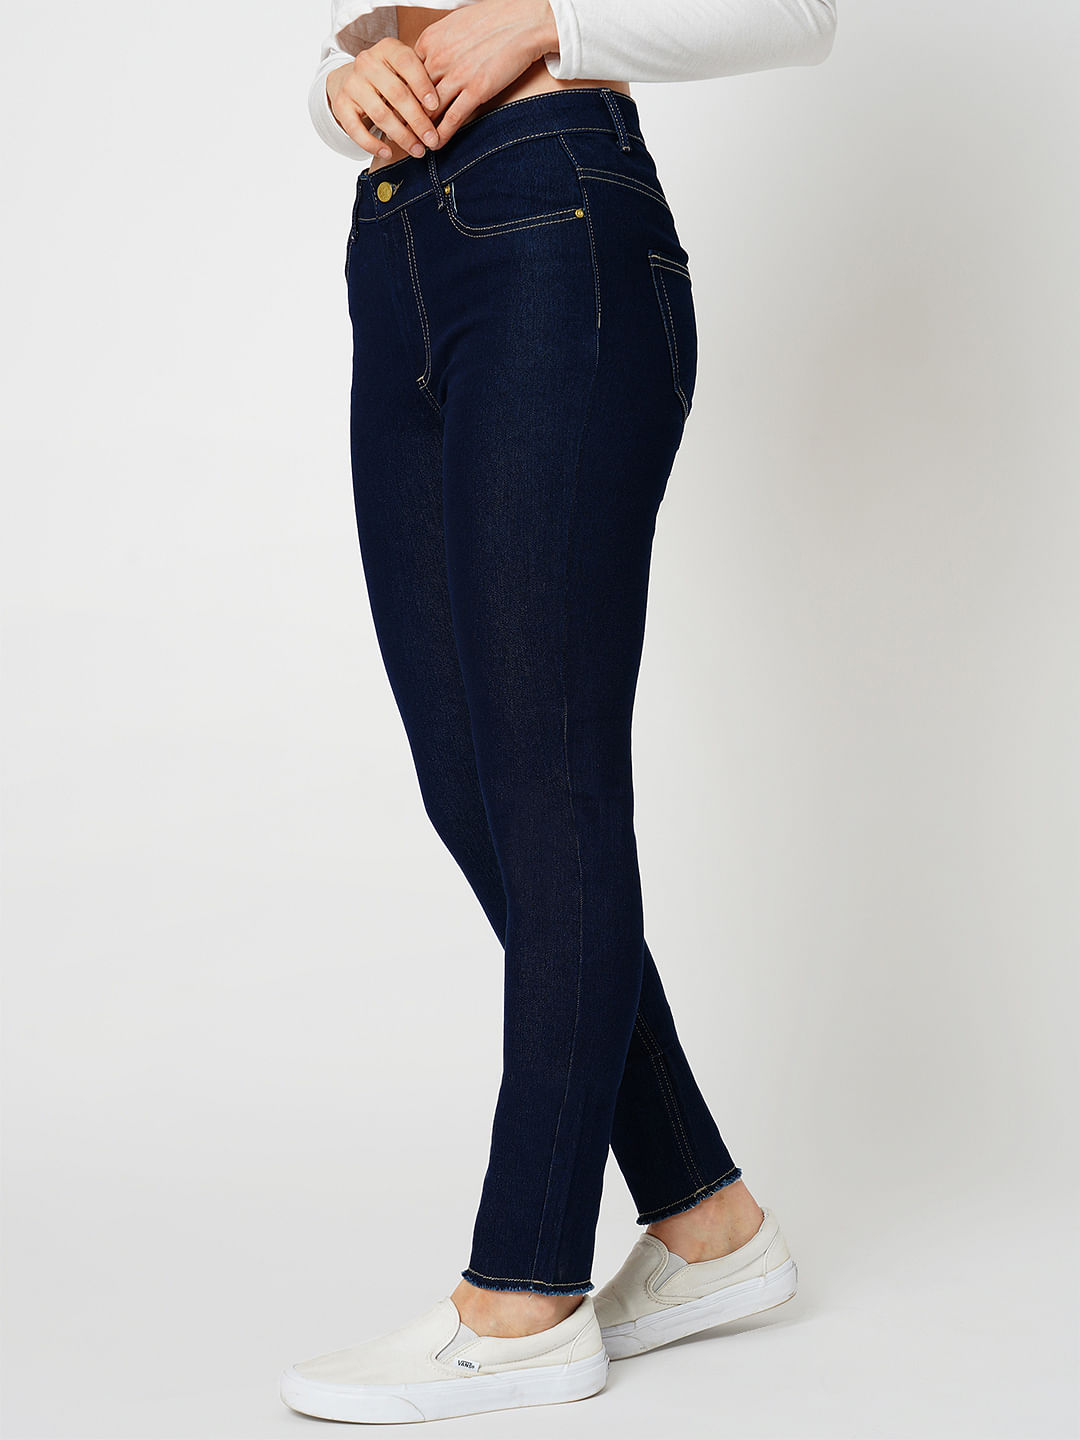 JDY Women Denim Black Stone wash Jeans Stretch Skinny Jeans Size L/32 | eBay